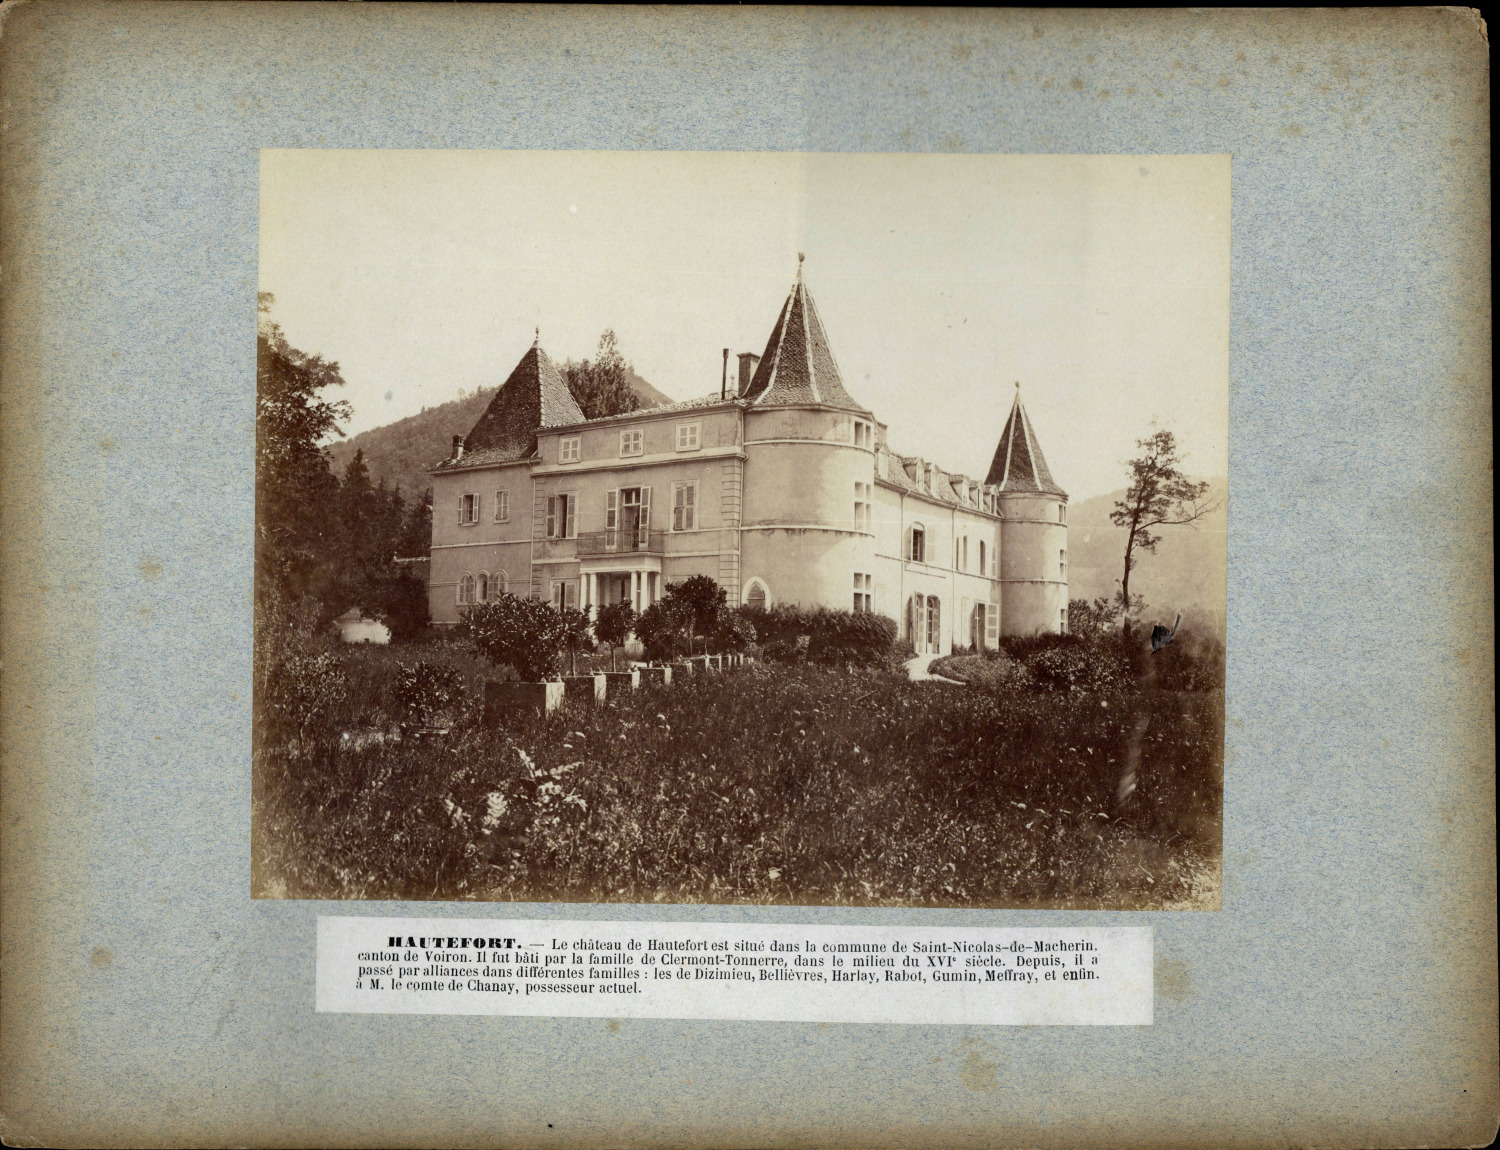 France, Saint-Nicolas-de-Macherin, Château de Hautefort vintage albumen print 